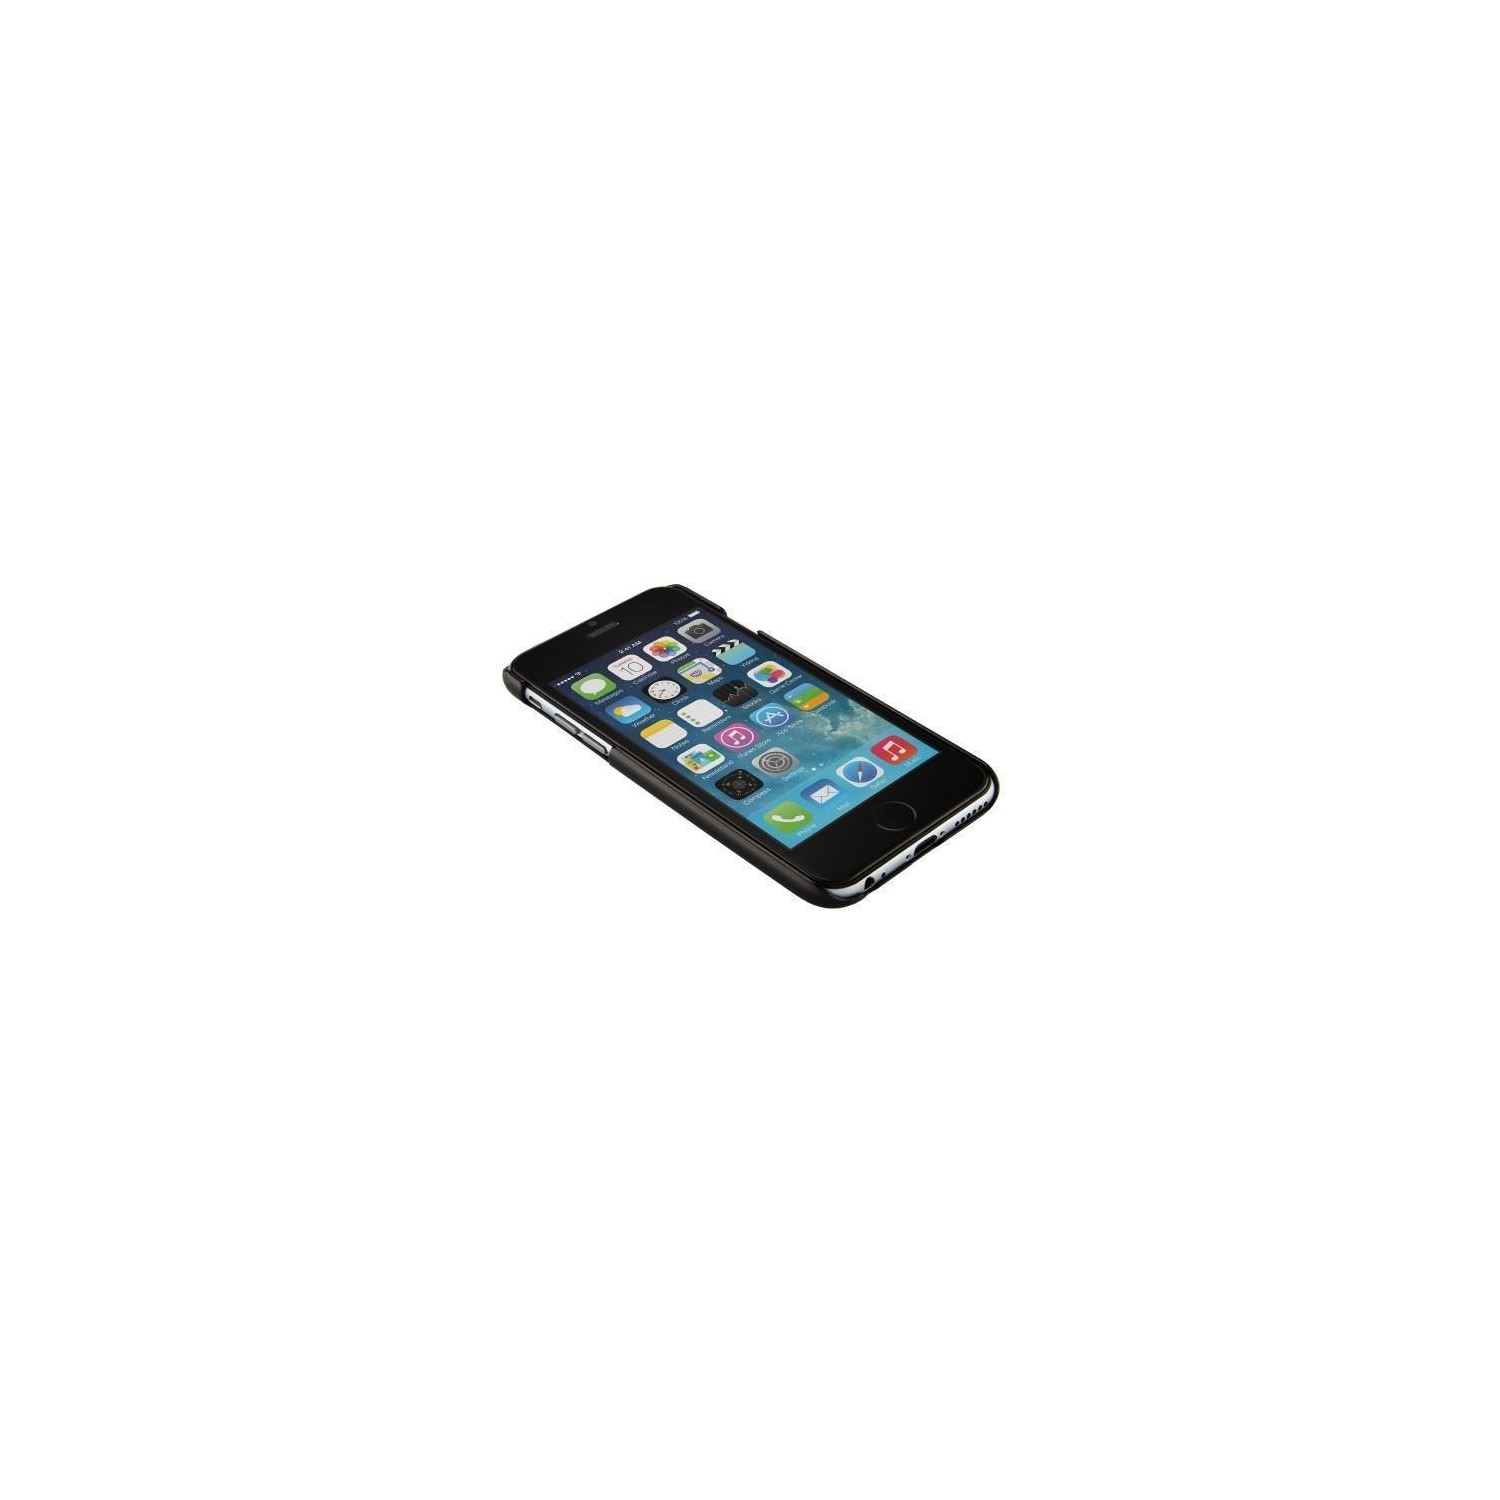 Carcasa / Funda QDOS Ozone para iPhone 6 Transparente